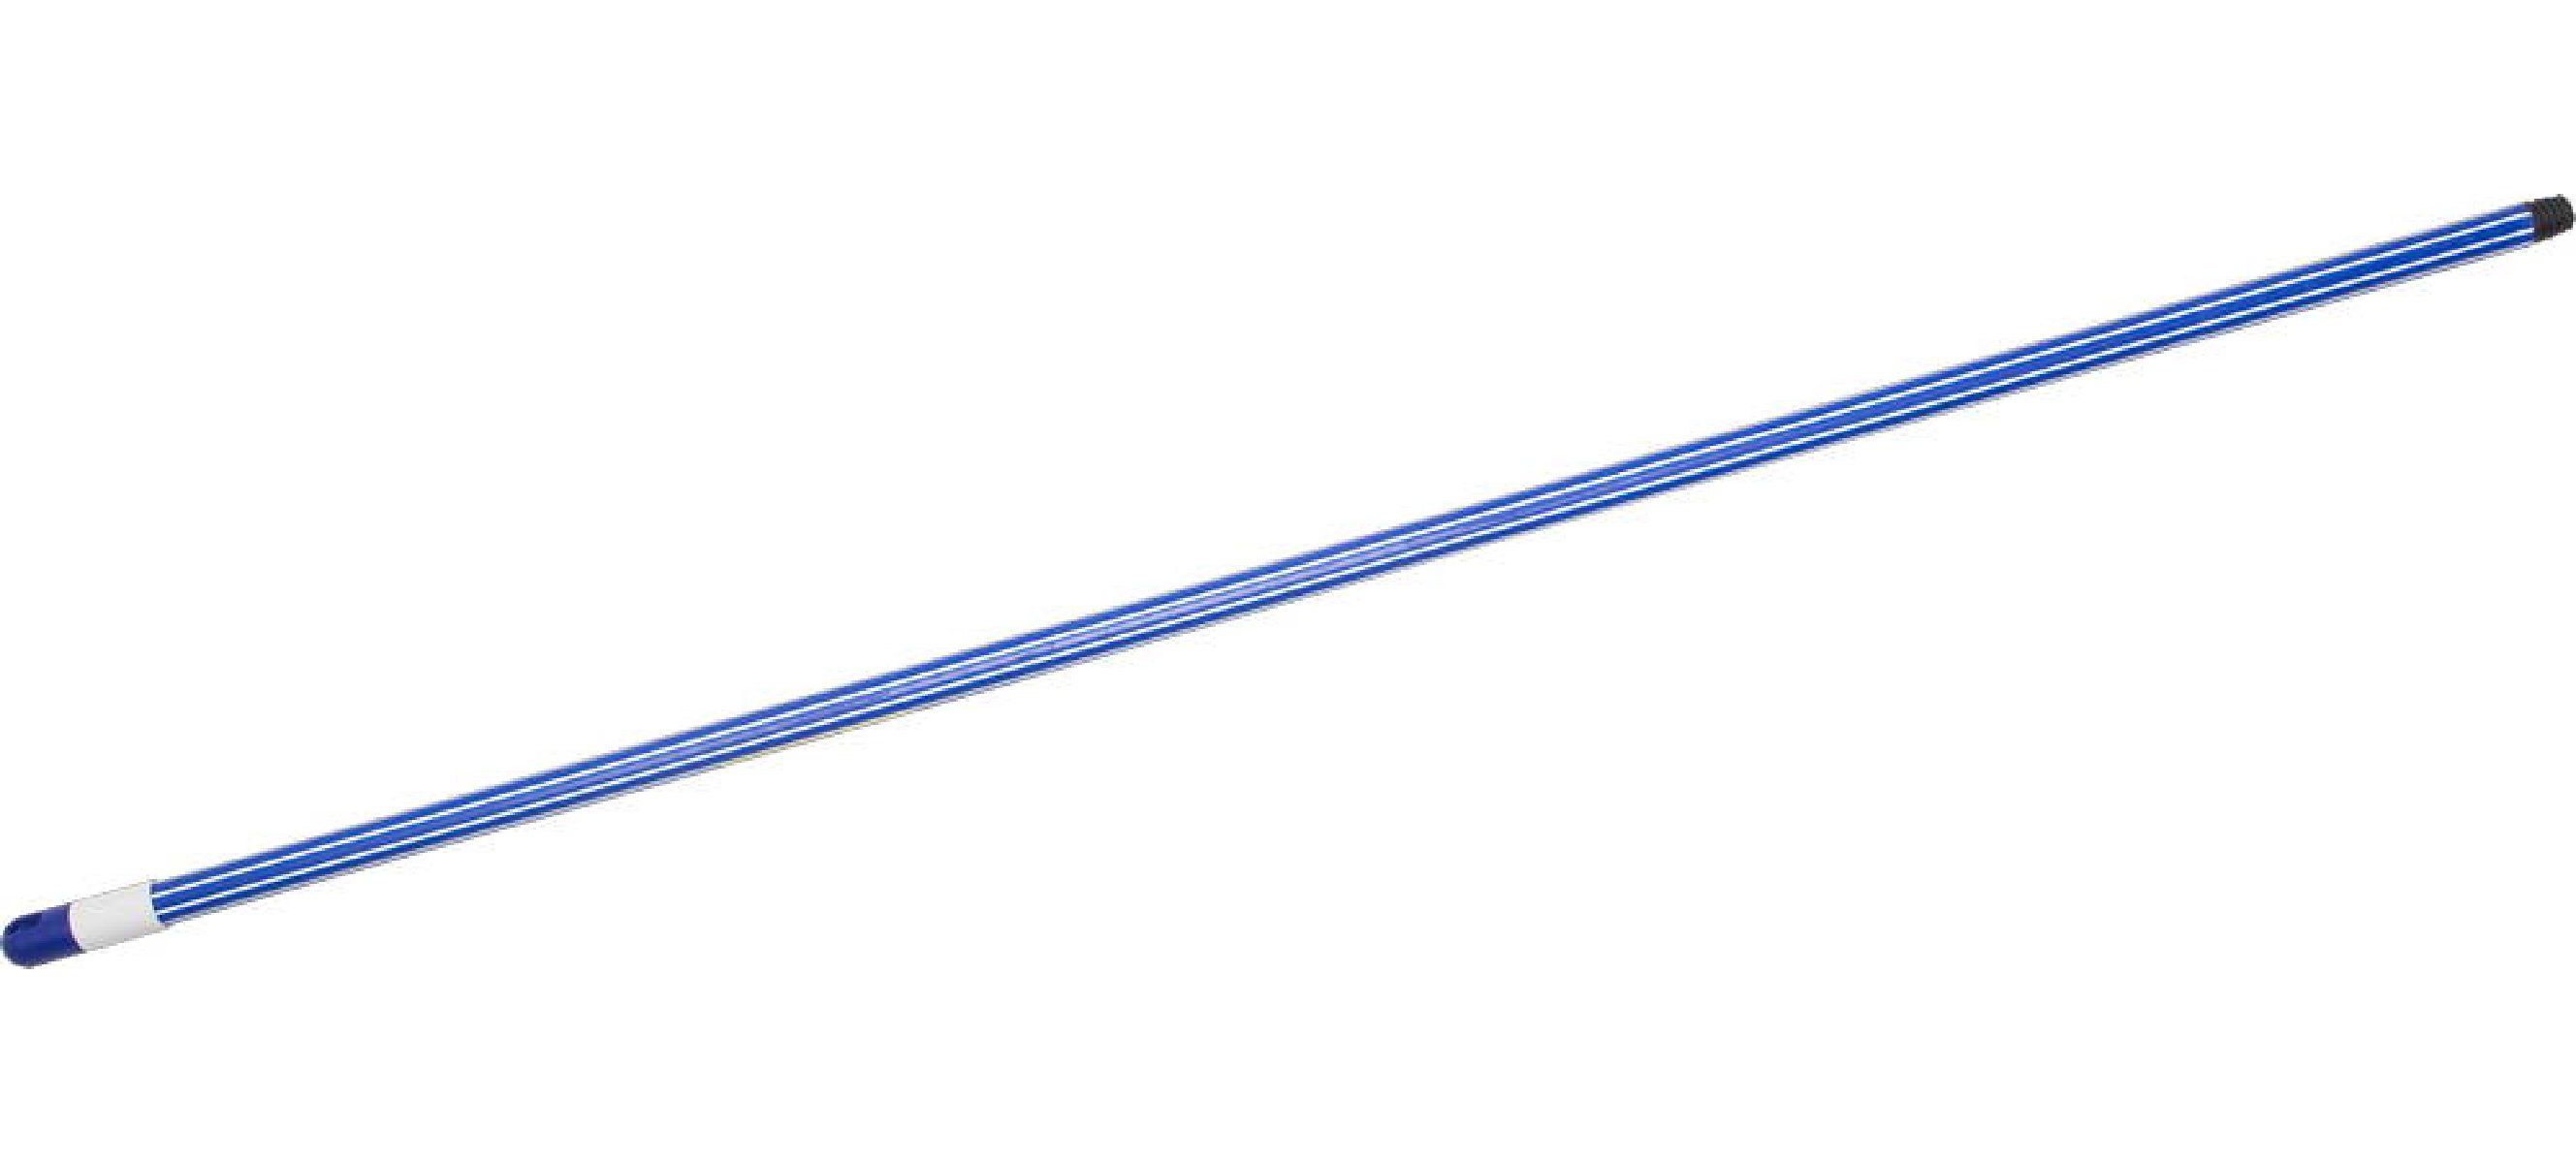 Облегченная ручка STAYER для щеток 130 см двухкомпонент покрытие с резьбой (2-39134-S)Купить